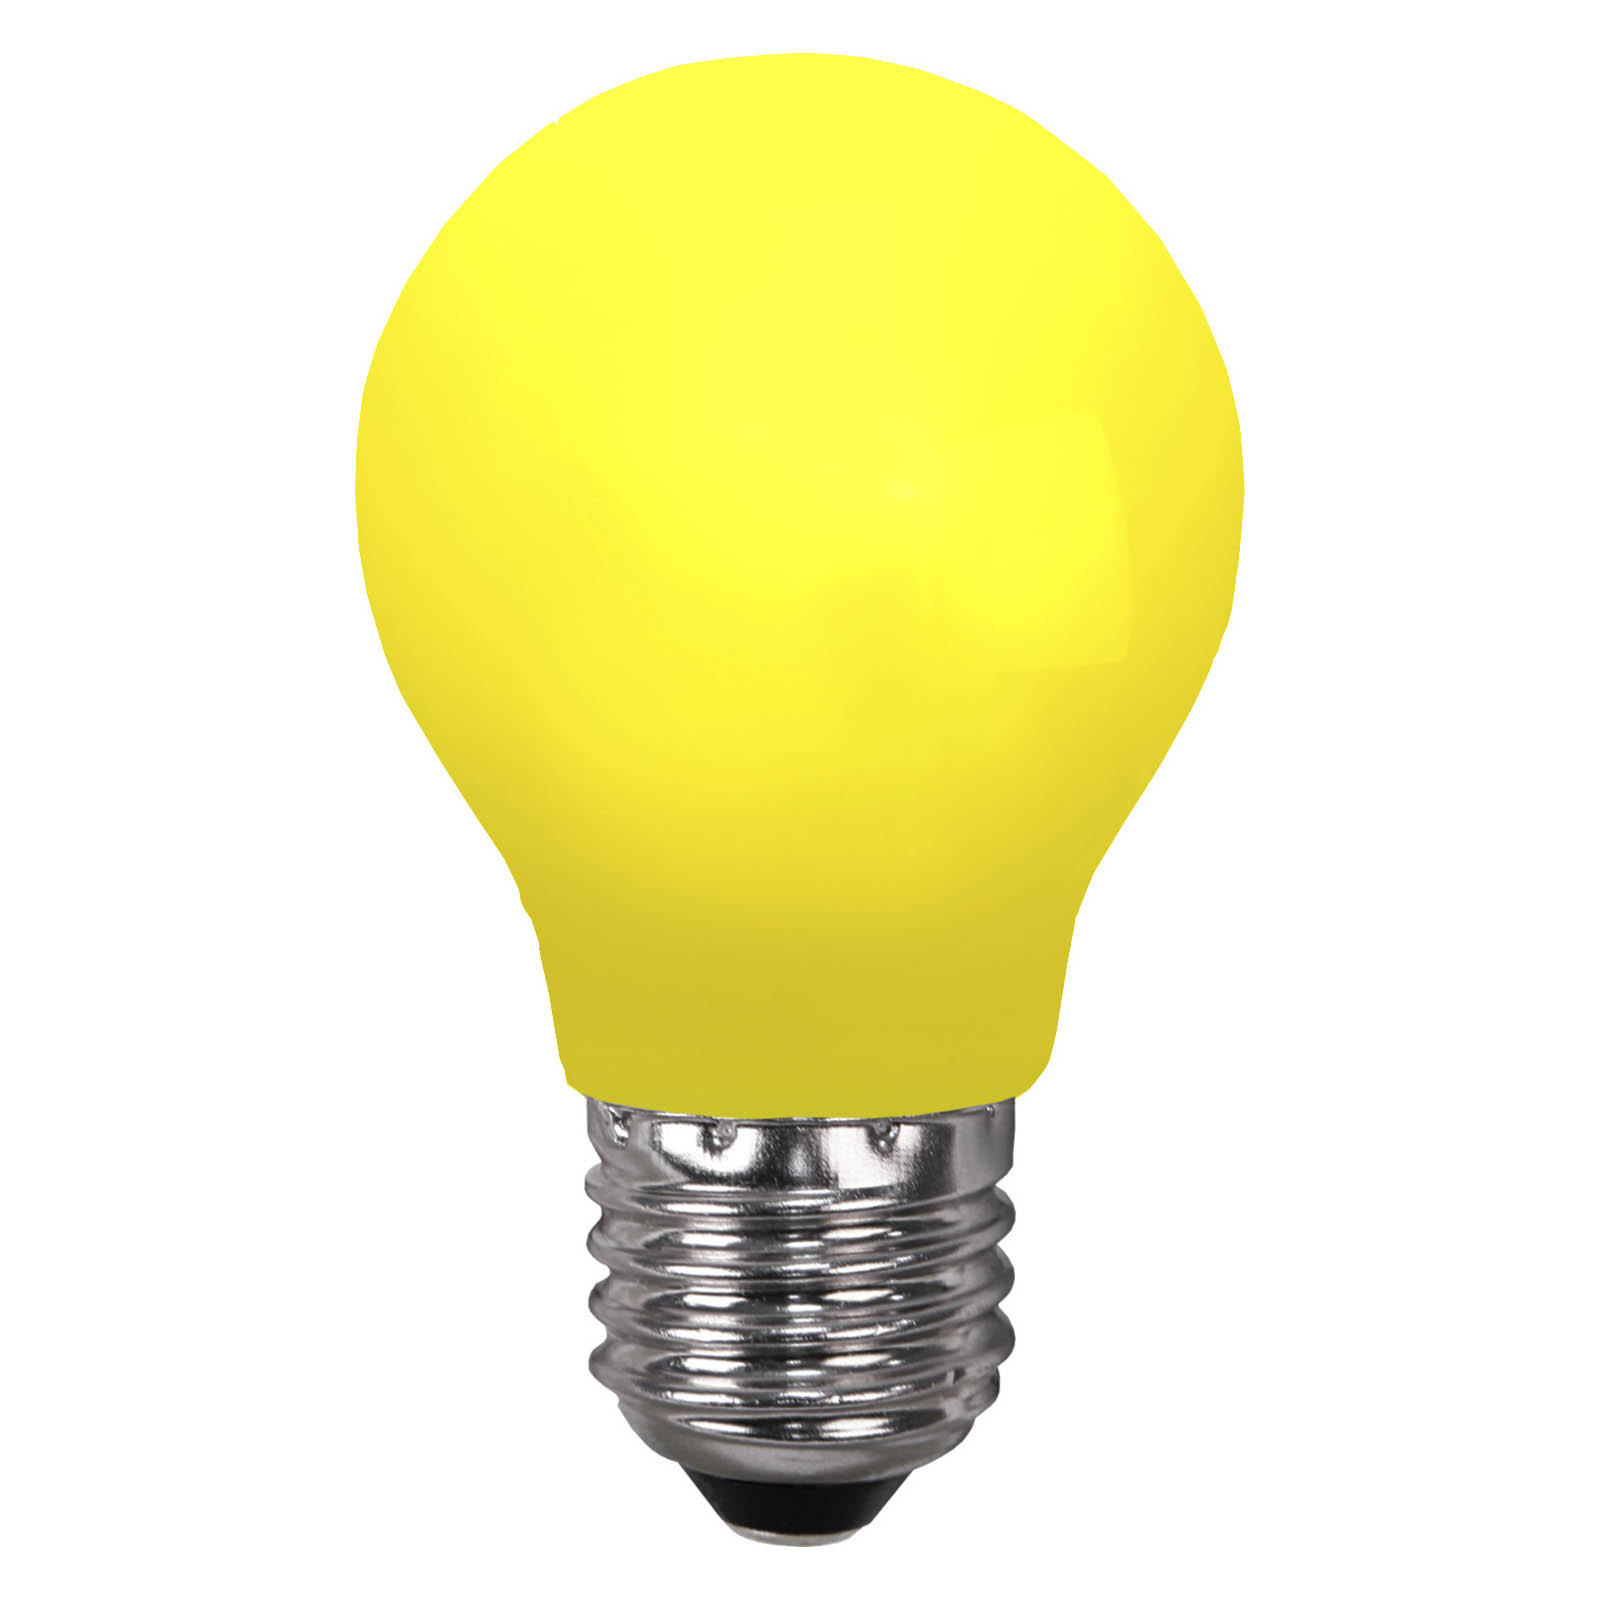 LED-lampe E27 til lyskæder, brudsikker, gul